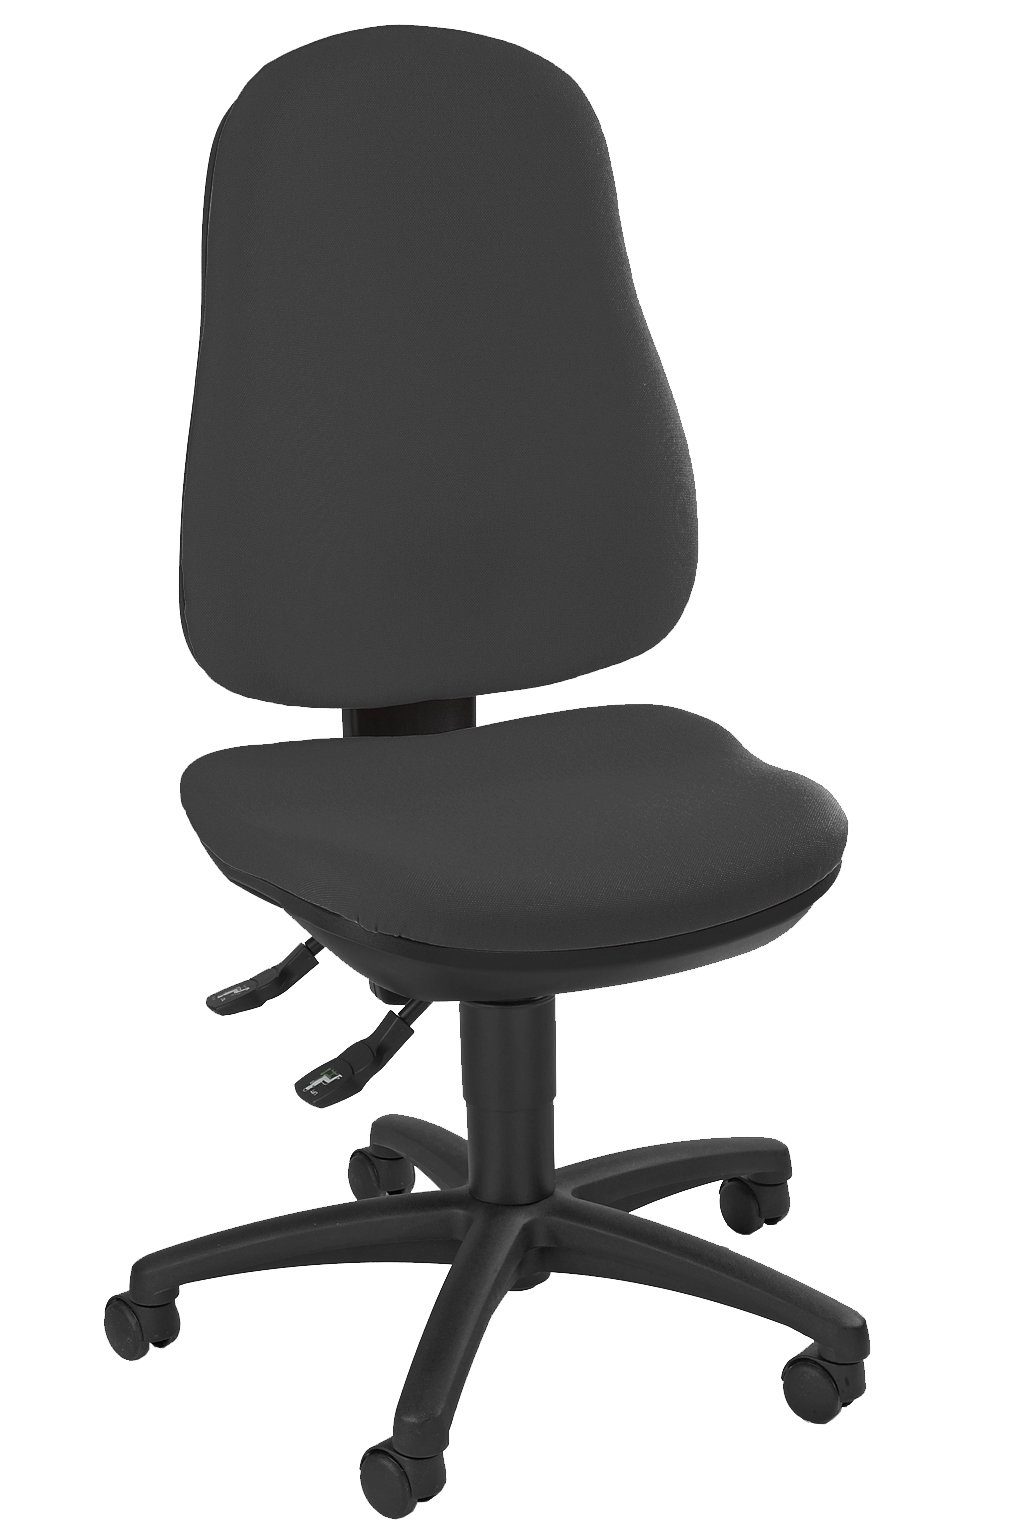 Steelboxx Drehstuhl Bürodrehstuhl mit Bandscheiben Sitz Schreibtischstuhl (1), Sitz- und Rückenflächen sind ergonomisch geformt, Sitzhöhe stufenlos verstellbar Bezug: Anthrazit